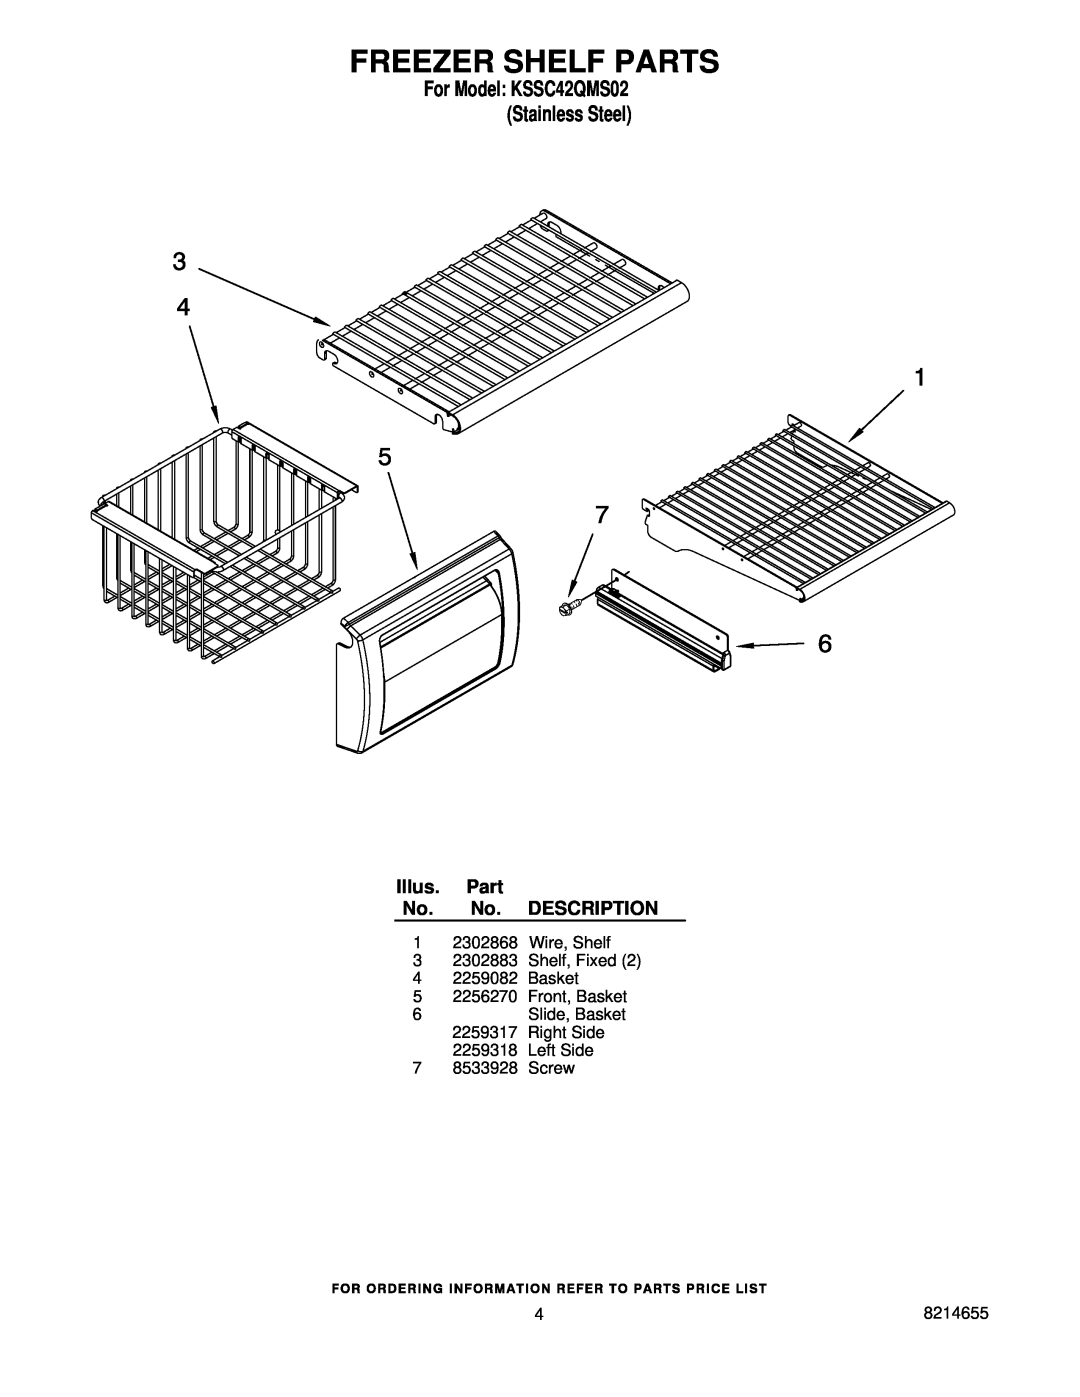 KitchenAid manual Freezer Shelf Parts, For Model KSSC42QMS02 Stainless Steel, Illus. Part No. No. DESCRIPTION 